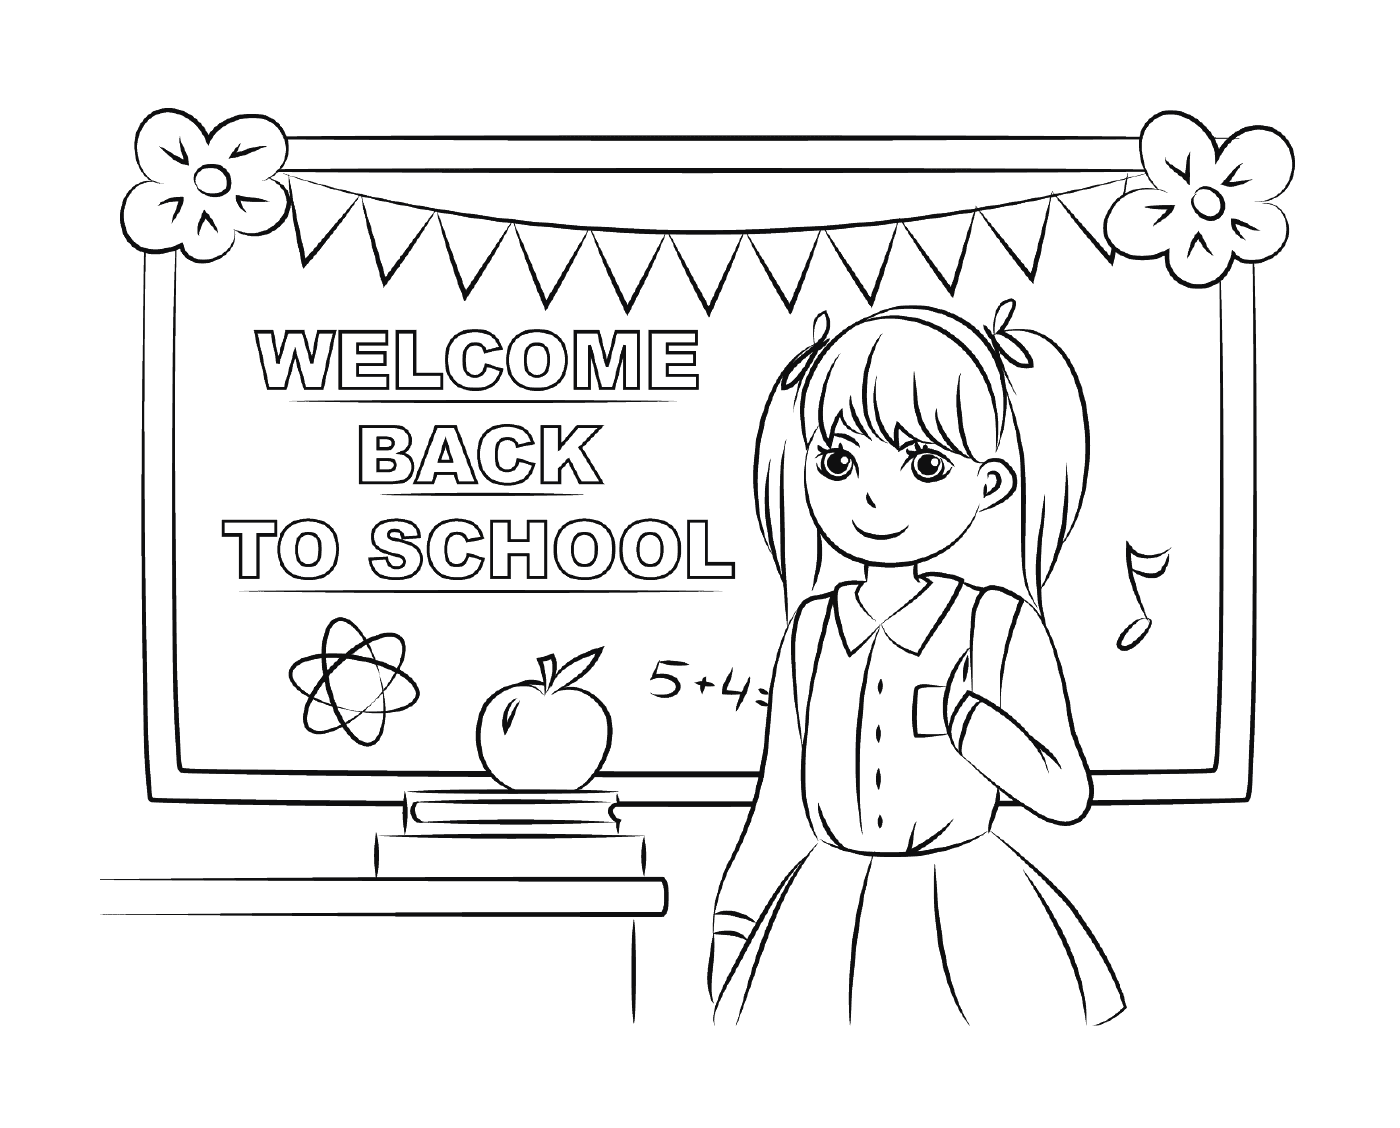   Bienvenue à la rentrée scolaire 